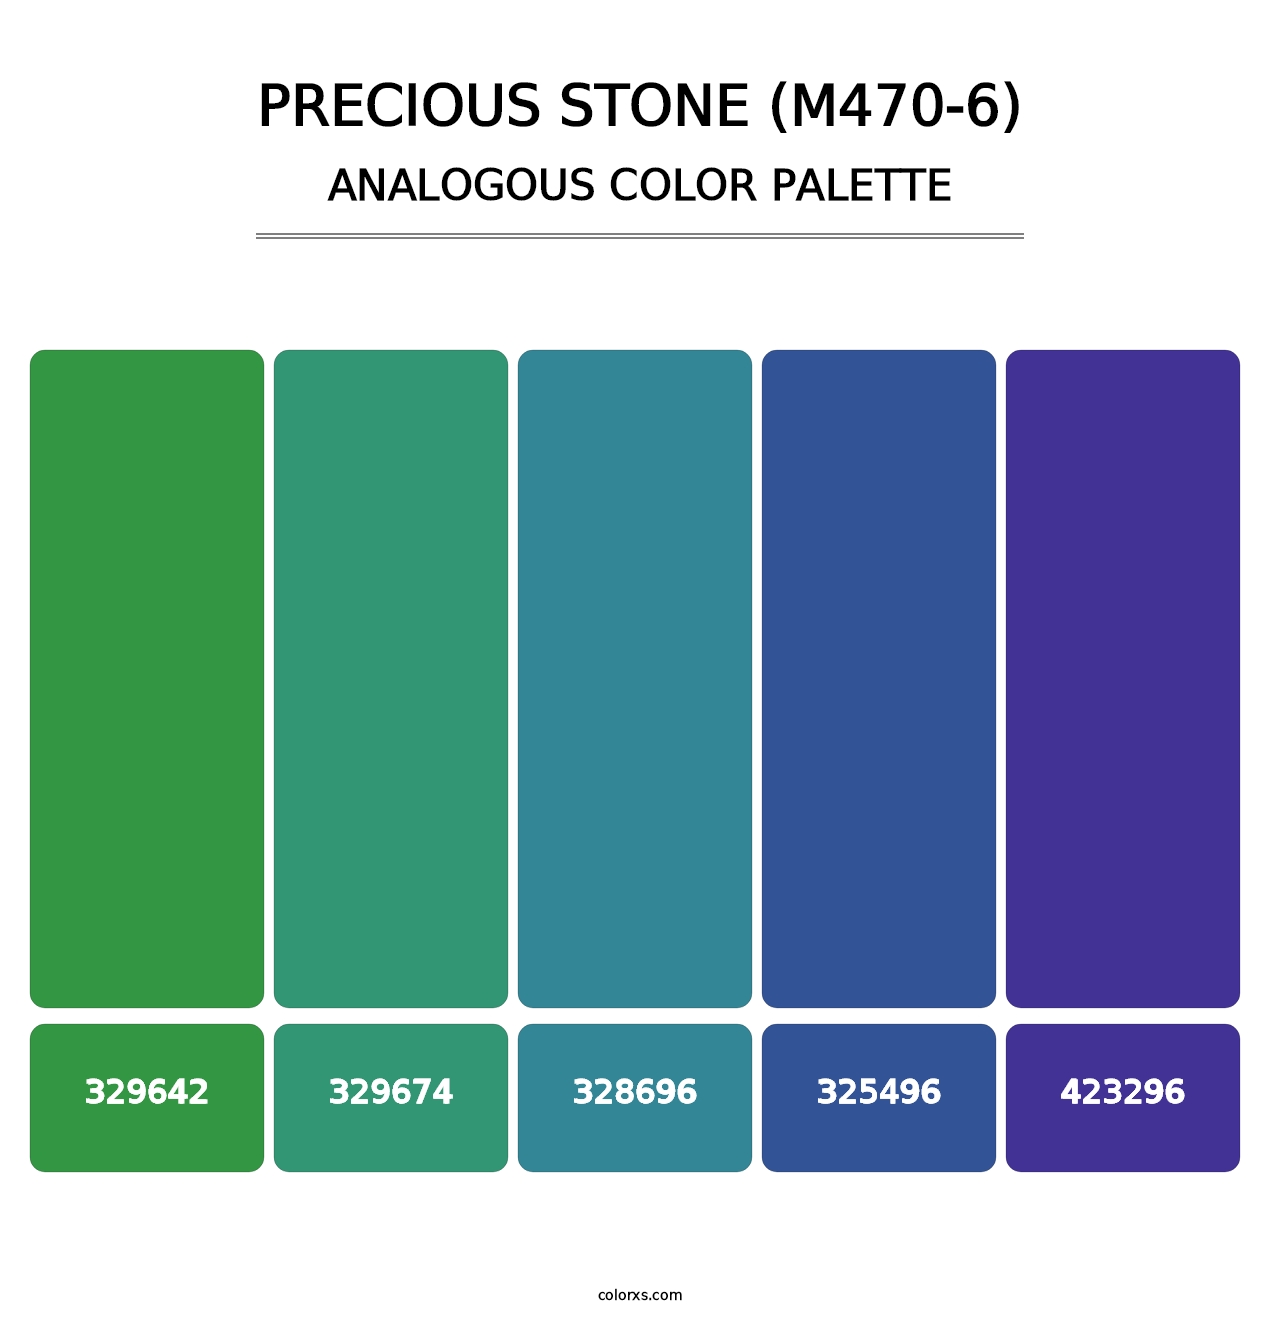 Precious Stone (M470-6) - Analogous Color Palette